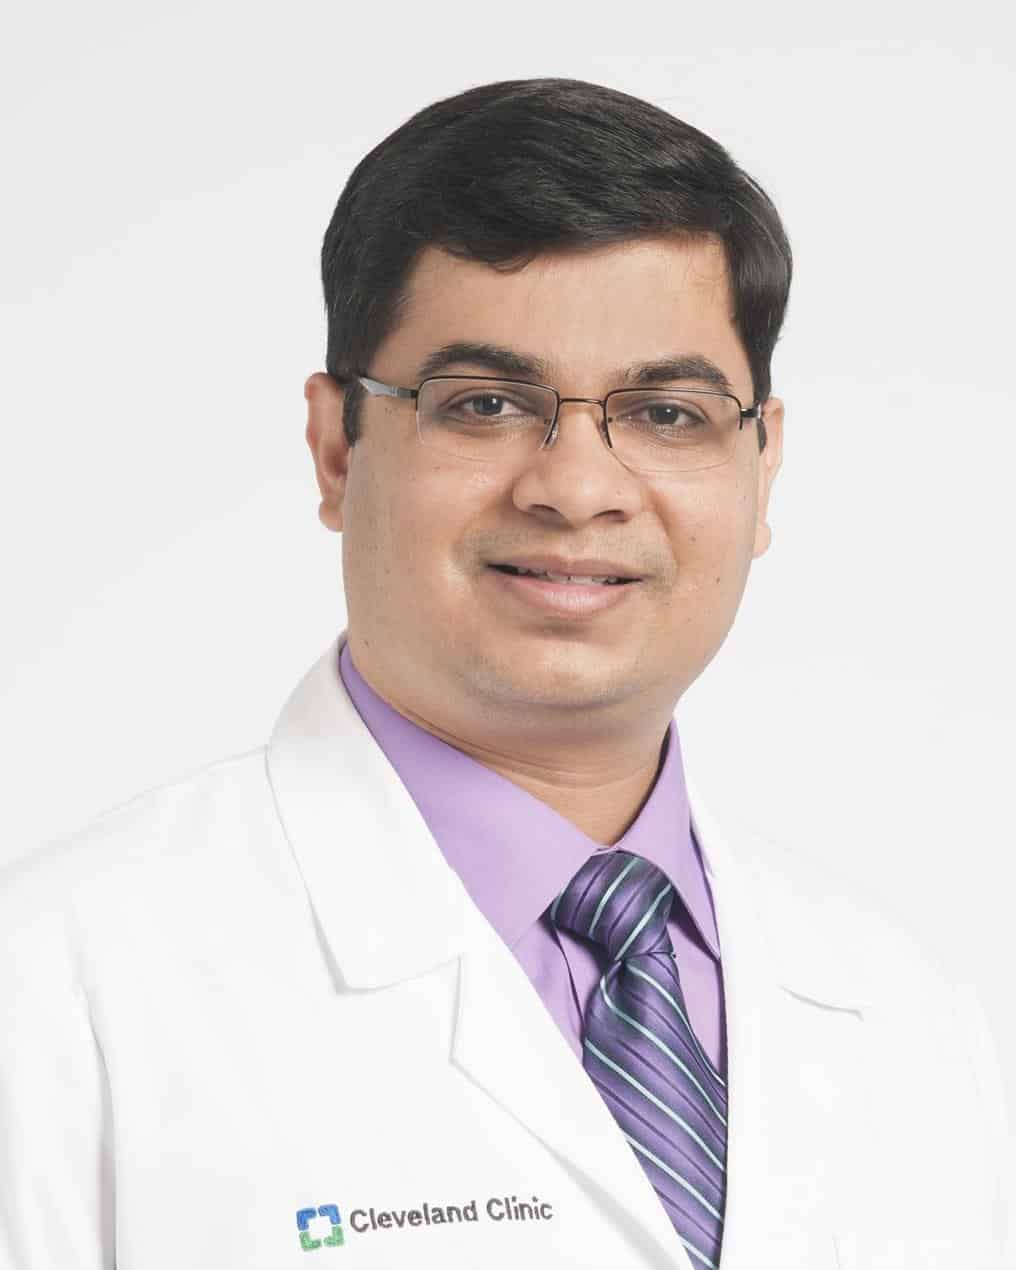 الدكتور فيشال شاه